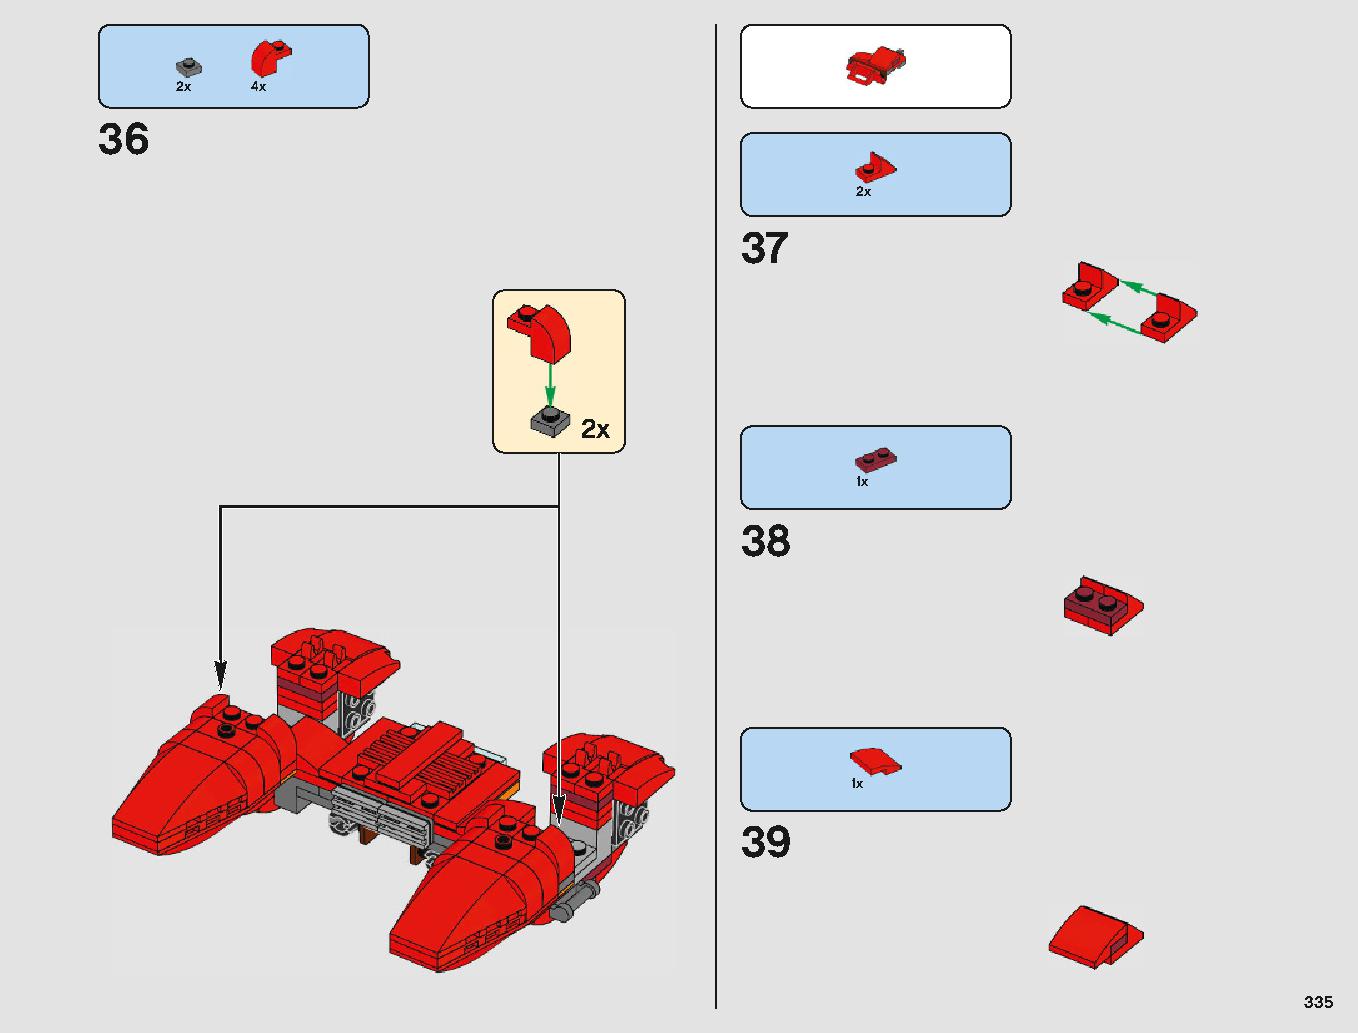 クラウド・シティ 75222 レゴの商品情報 レゴの説明書・組立方法 335 page